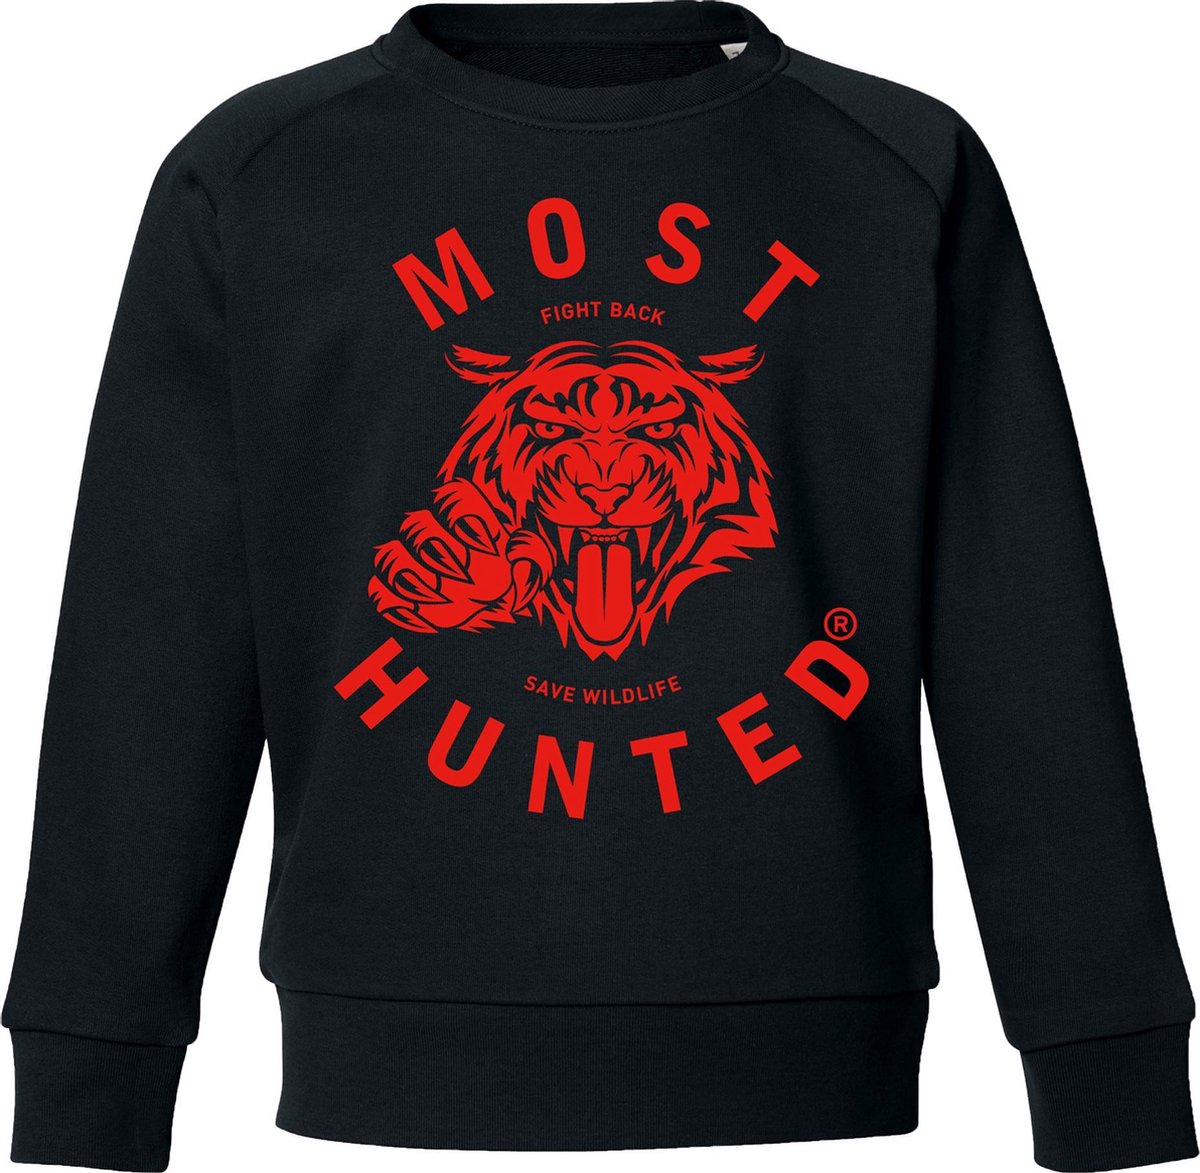 Most Hunted - kindersweater - tijger - zwart rood - maat 134/140cm